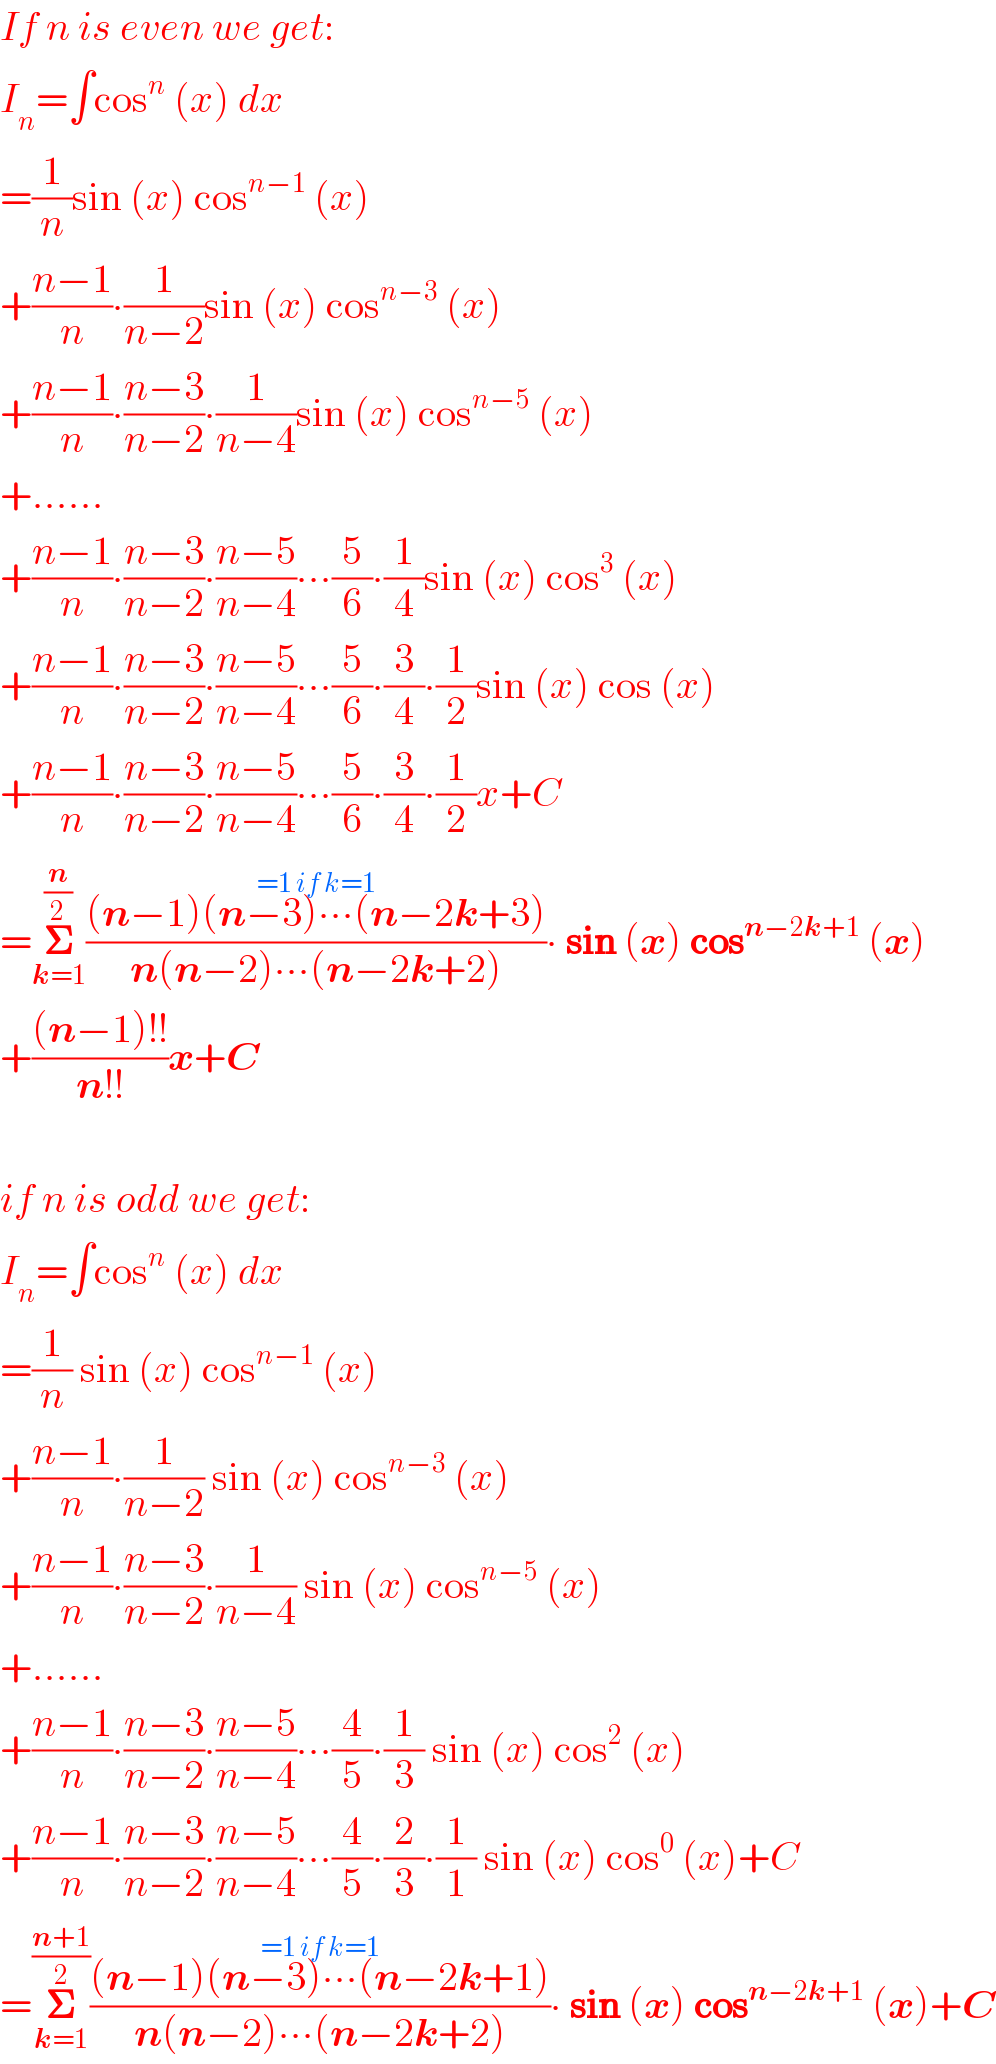 If n is even we get:  I_n =∫cos^n  (x) dx  =(1/n)sin (x) cos^(n−1)  (x)  +((n−1)/n)∙(1/(n−2))sin (x) cos^(n−3)  (x)  +((n−1)/n)∙((n−3)/(n−2))∙(1/(n−4))sin (x) cos^(n−5)  (x)  +......  +((n−1)/n)∙((n−3)/(n−2))∙((n−5)/(n−4))∙∙∙(5/6)∙(1/4)sin (x) cos^3  (x)  +((n−1)/n)∙((n−3)/(n−2))∙((n−5)/(n−4))∙∙∙(5/6)∙(3/4)∙(1/2)sin (x) cos (x)  +((n−1)/n)∙((n−3)/(n−2))∙((n−5)/(n−4))∙∙∙(5/6)∙(3/4)∙(1/2)x+C  =𝚺_(k=1) ^(n/2) (((n−1)(n−3)∙∙∙(n−2k+3)^(=1 if k=1) )/(n(n−2)∙∙∙(n−2k+2)))∙ sin (x) cos^(n−2k+1)  (x)  +(((n−1)!!)/(n!!))x+C    if n is odd we get:  I_n =∫cos^n  (x) dx  =(1/n) sin (x) cos^(n−1)  (x)  +((n−1)/n)∙(1/(n−2)) sin (x) cos^(n−3)  (x)  +((n−1)/n)∙((n−3)/(n−2))∙(1/(n−4)) sin (x) cos^(n−5)  (x)  +......  +((n−1)/n)∙((n−3)/(n−2))∙((n−5)/(n−4))∙∙∙(4/5)∙(1/3) sin (x) cos^2  (x)  +((n−1)/n)∙((n−3)/(n−2))∙((n−5)/(n−4))∙∙∙(4/5)∙(2/3)∙(1/1) sin (x) cos^0  (x)+C  =𝚺_(k=1) ^((n+1)/2) (((n−1)(n−3)∙∙∙(n−2k+1)^(=1 if k=1) )/(n(n−2)∙∙∙(n−2k+2)))∙ sin (x) cos^(n−2k+1)  (x)+C  